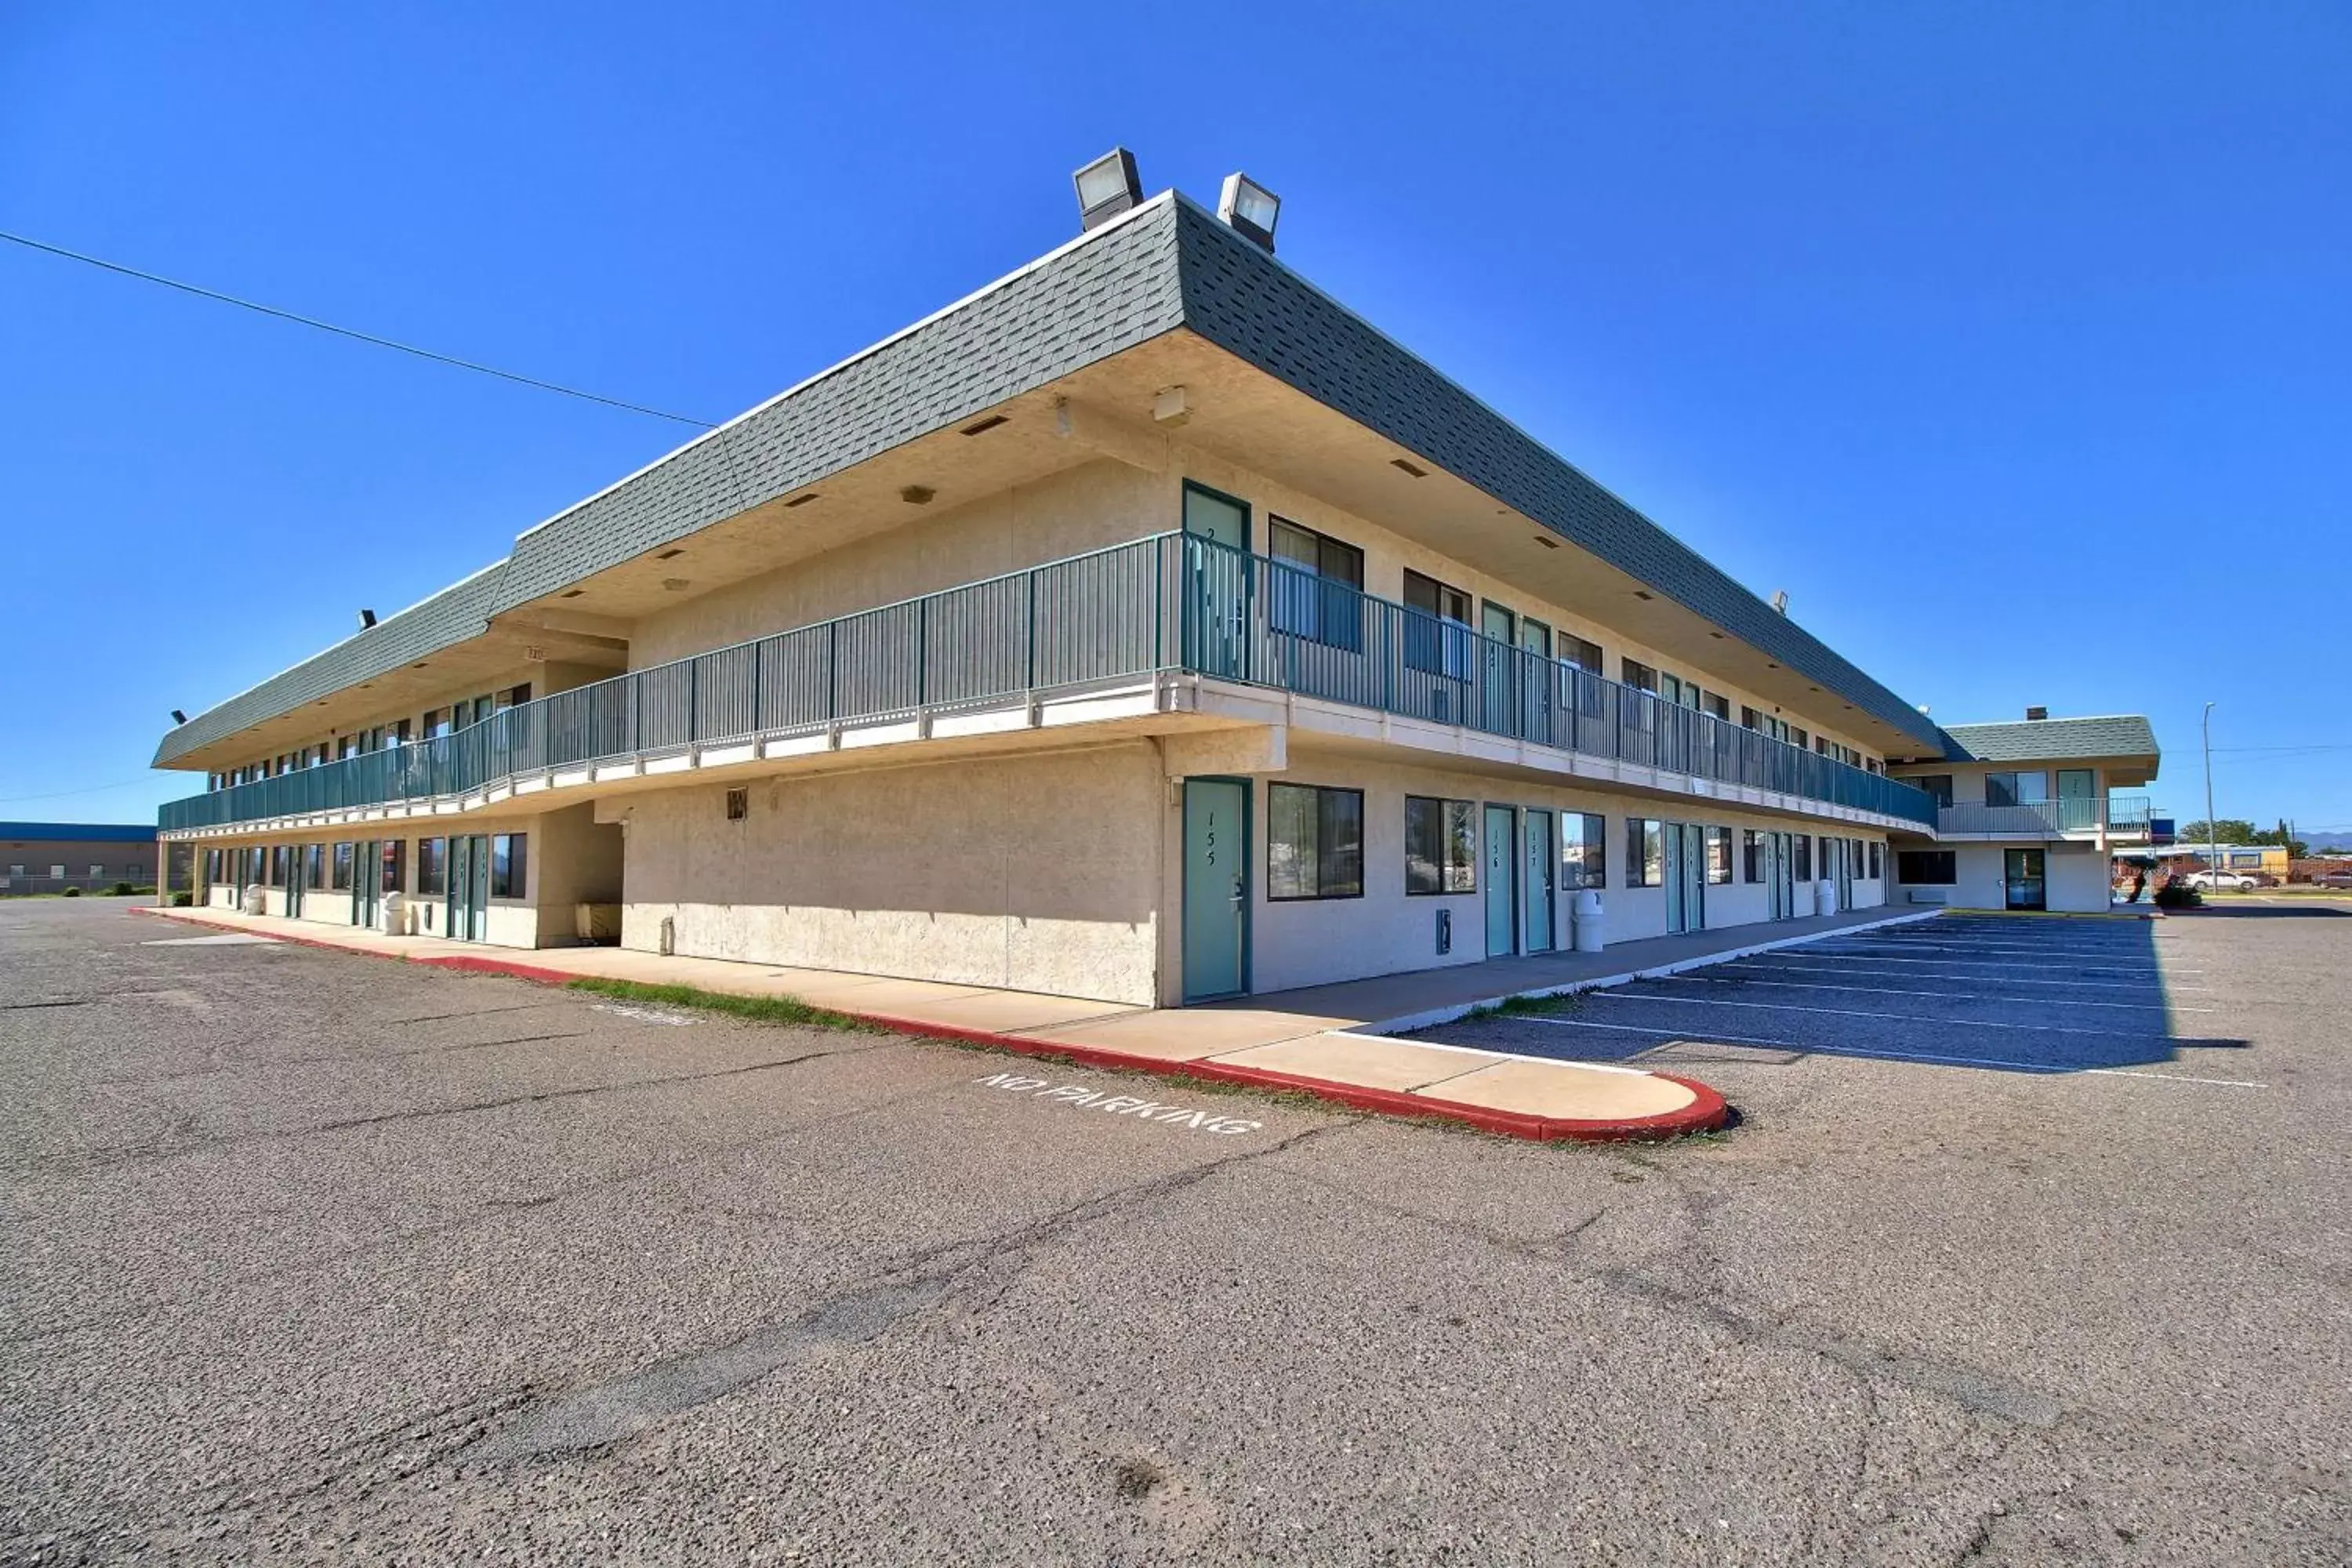 Property building, Facade/Entrance in Motel 6-Douglas, AZ